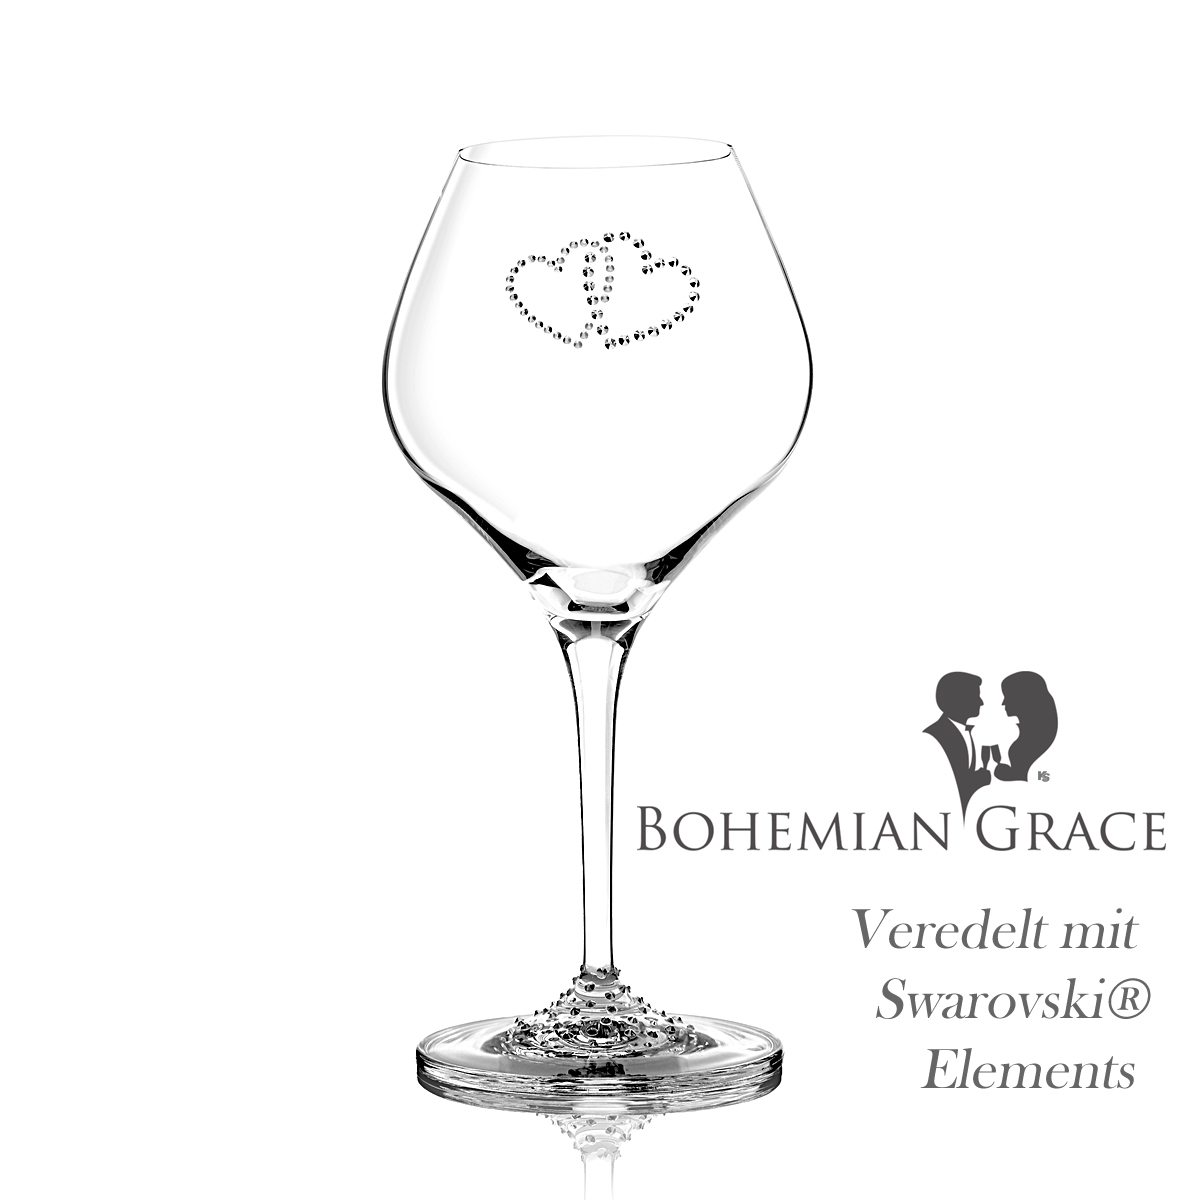 Weinglas 2Stk VALENTINE Bohemian Grace - Weissweingläser VALENTINE 2Stk, mit Swarovski Elements